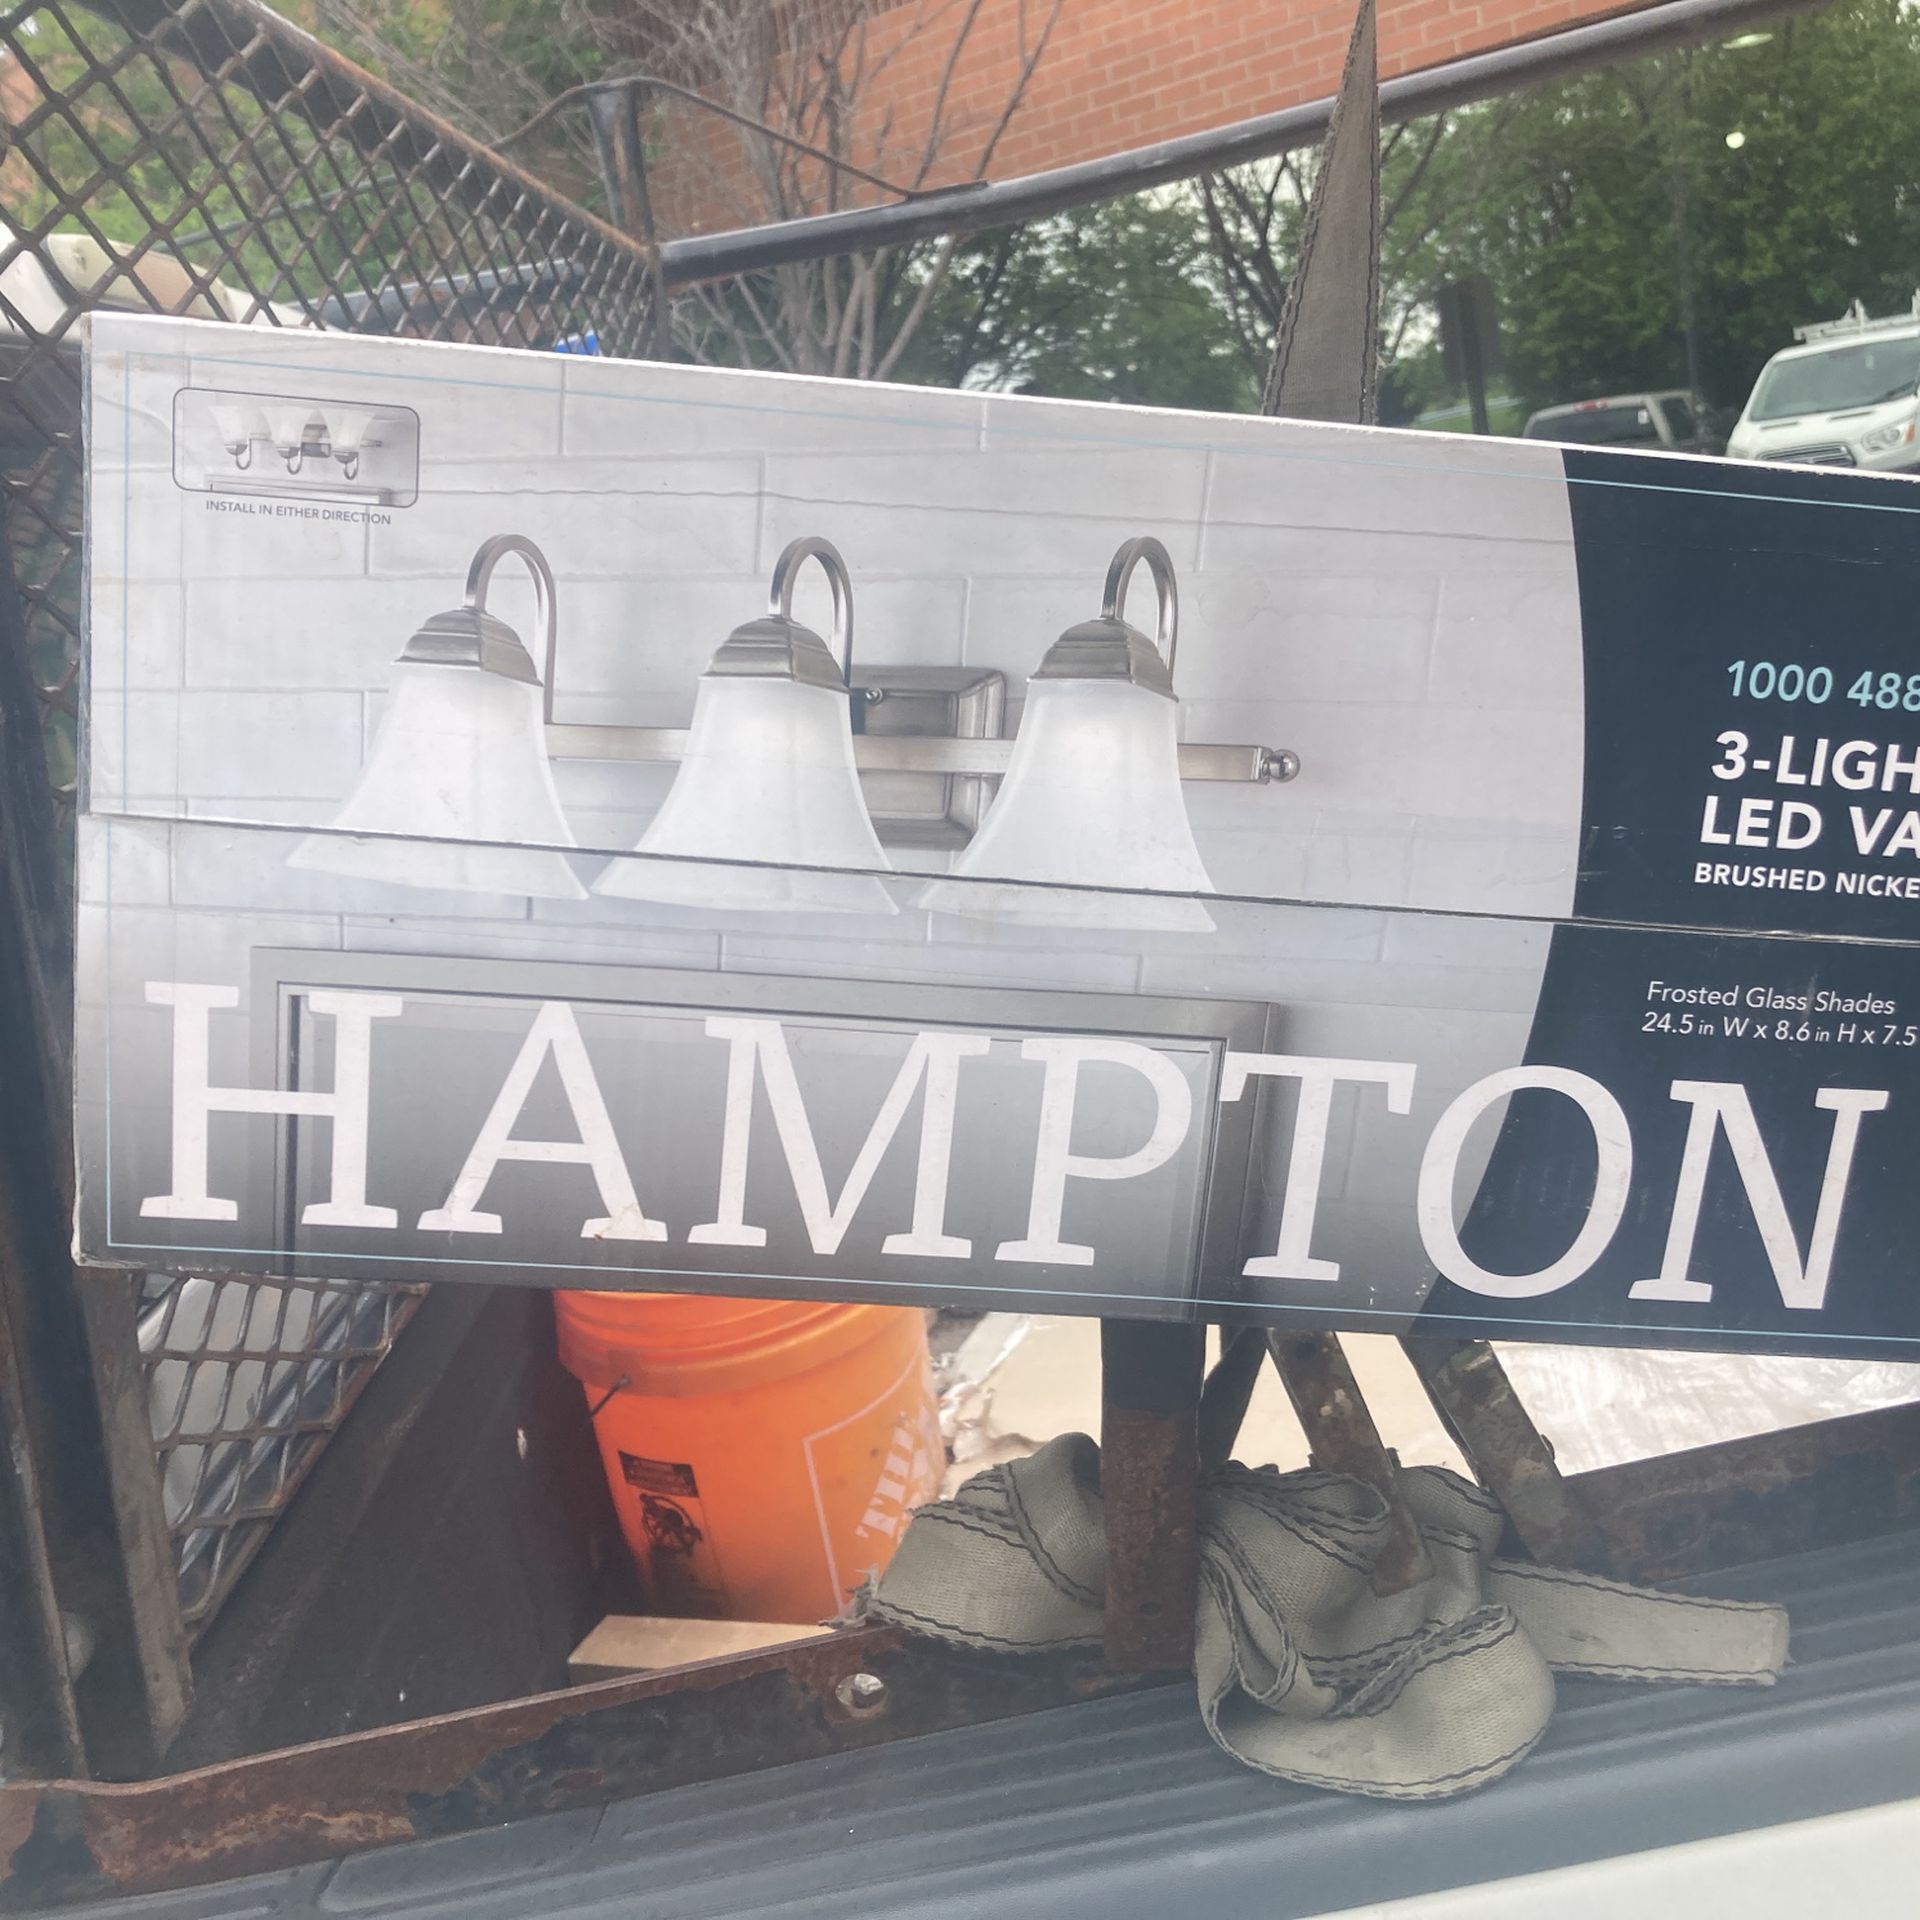 Hampton Bay three light LED vanity fixture brand new never been open